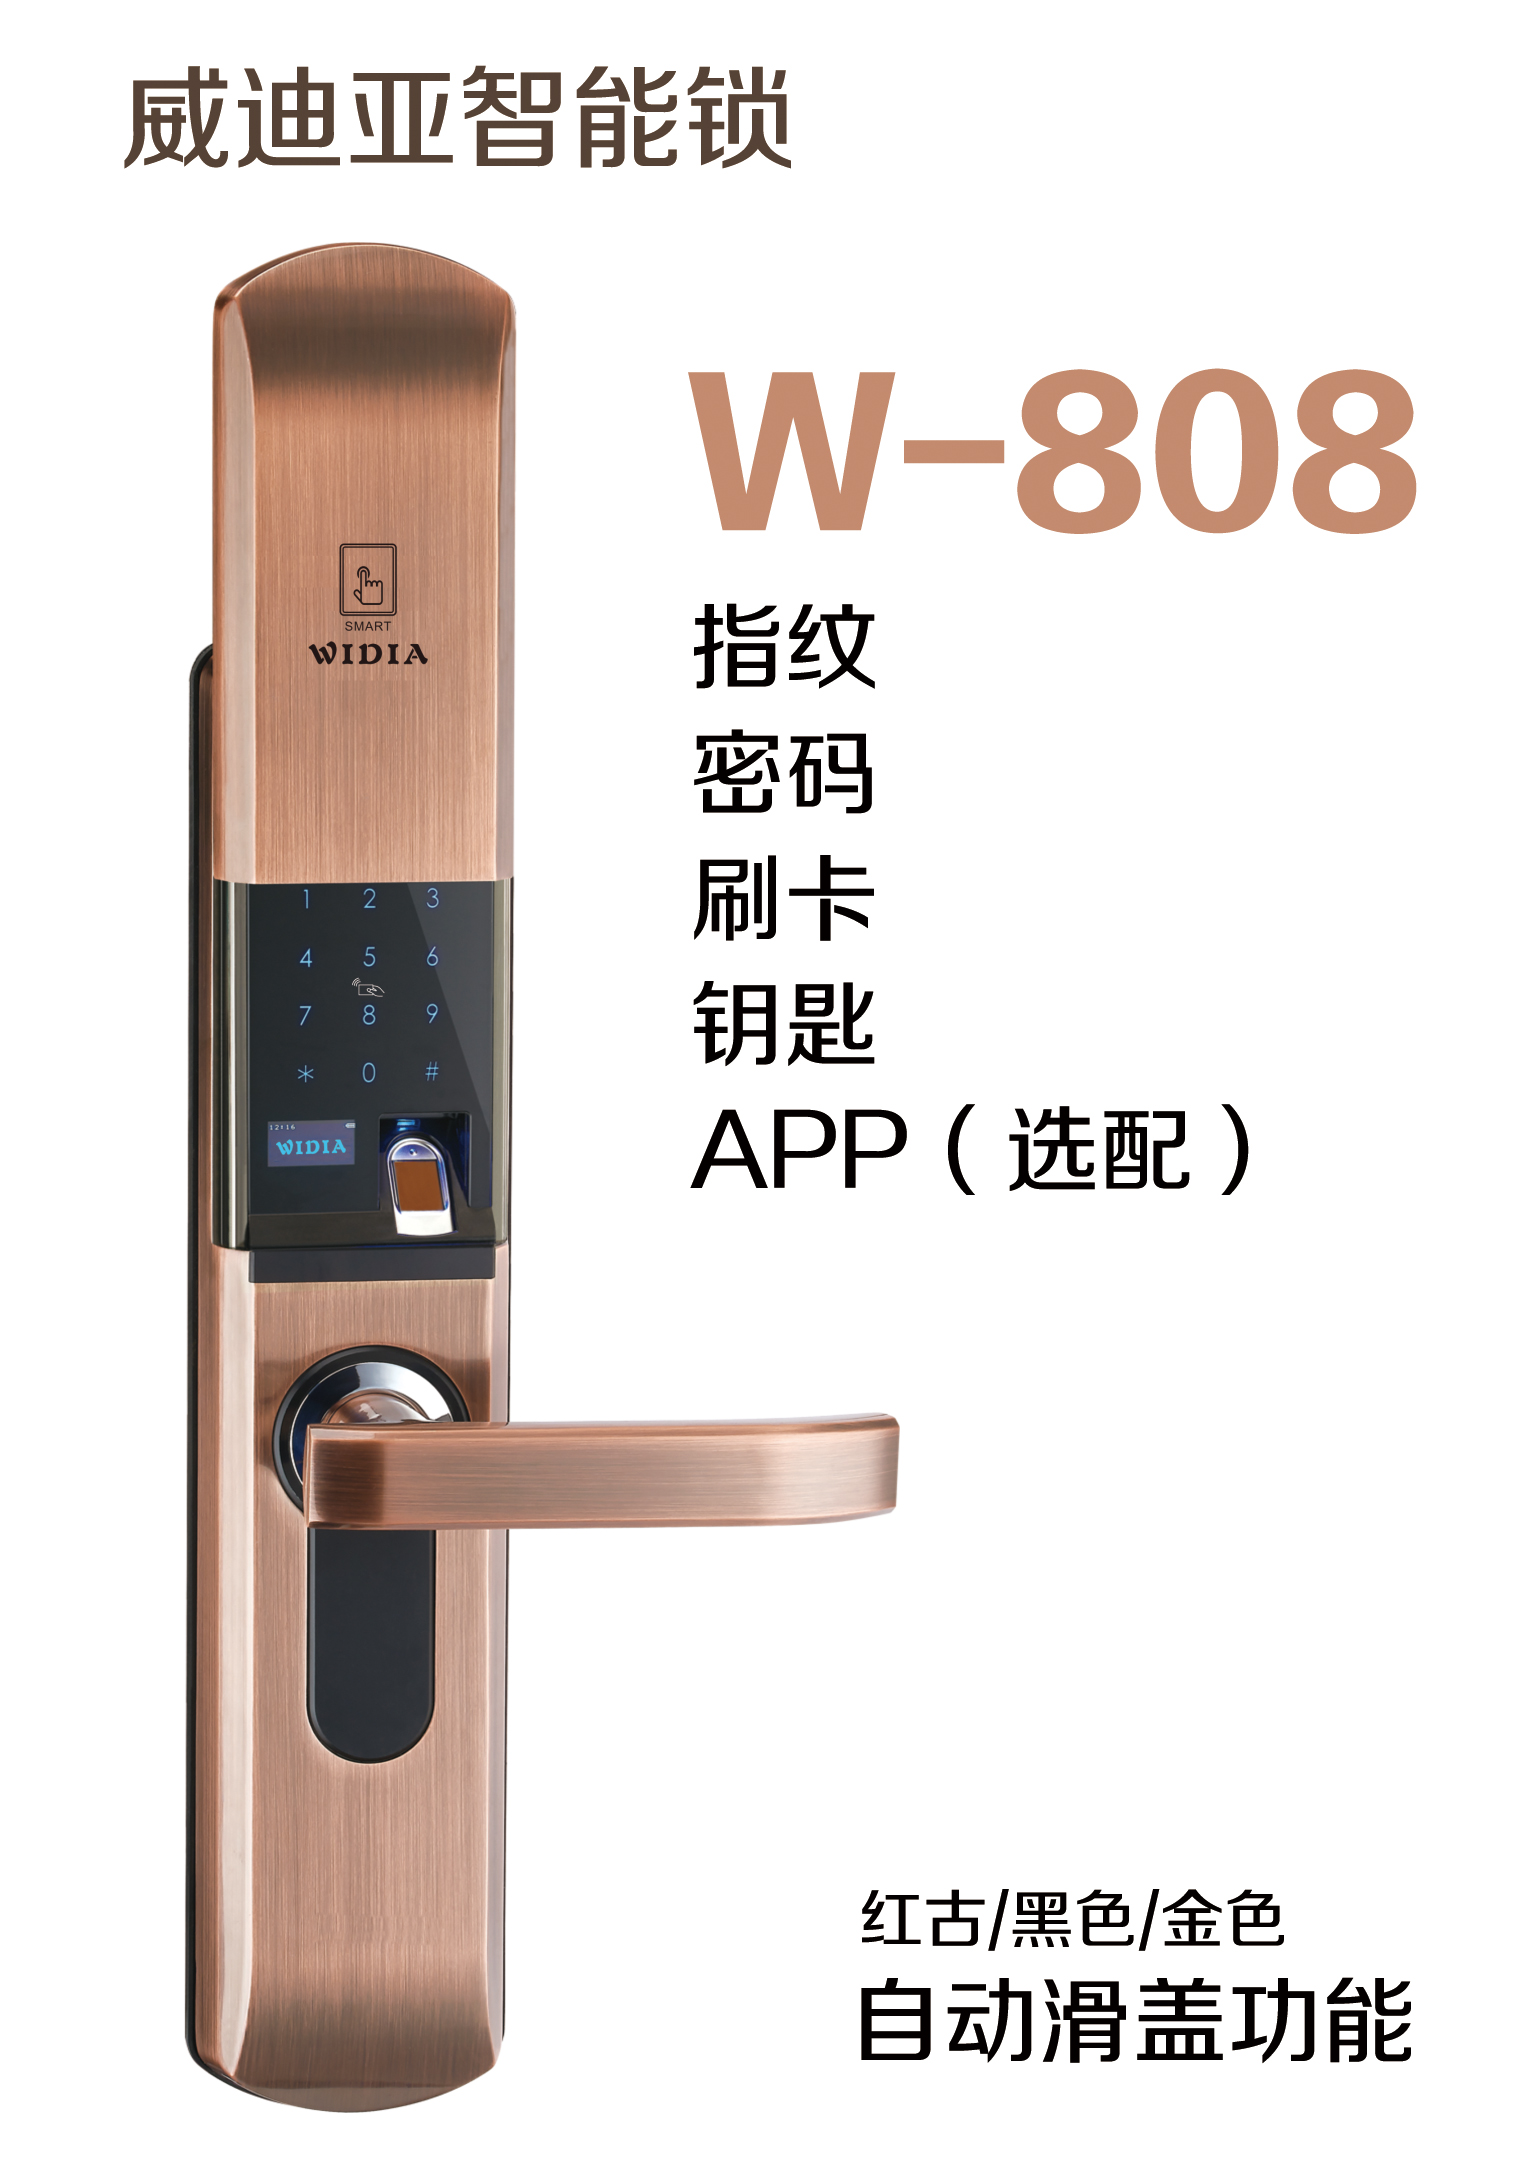 W-808